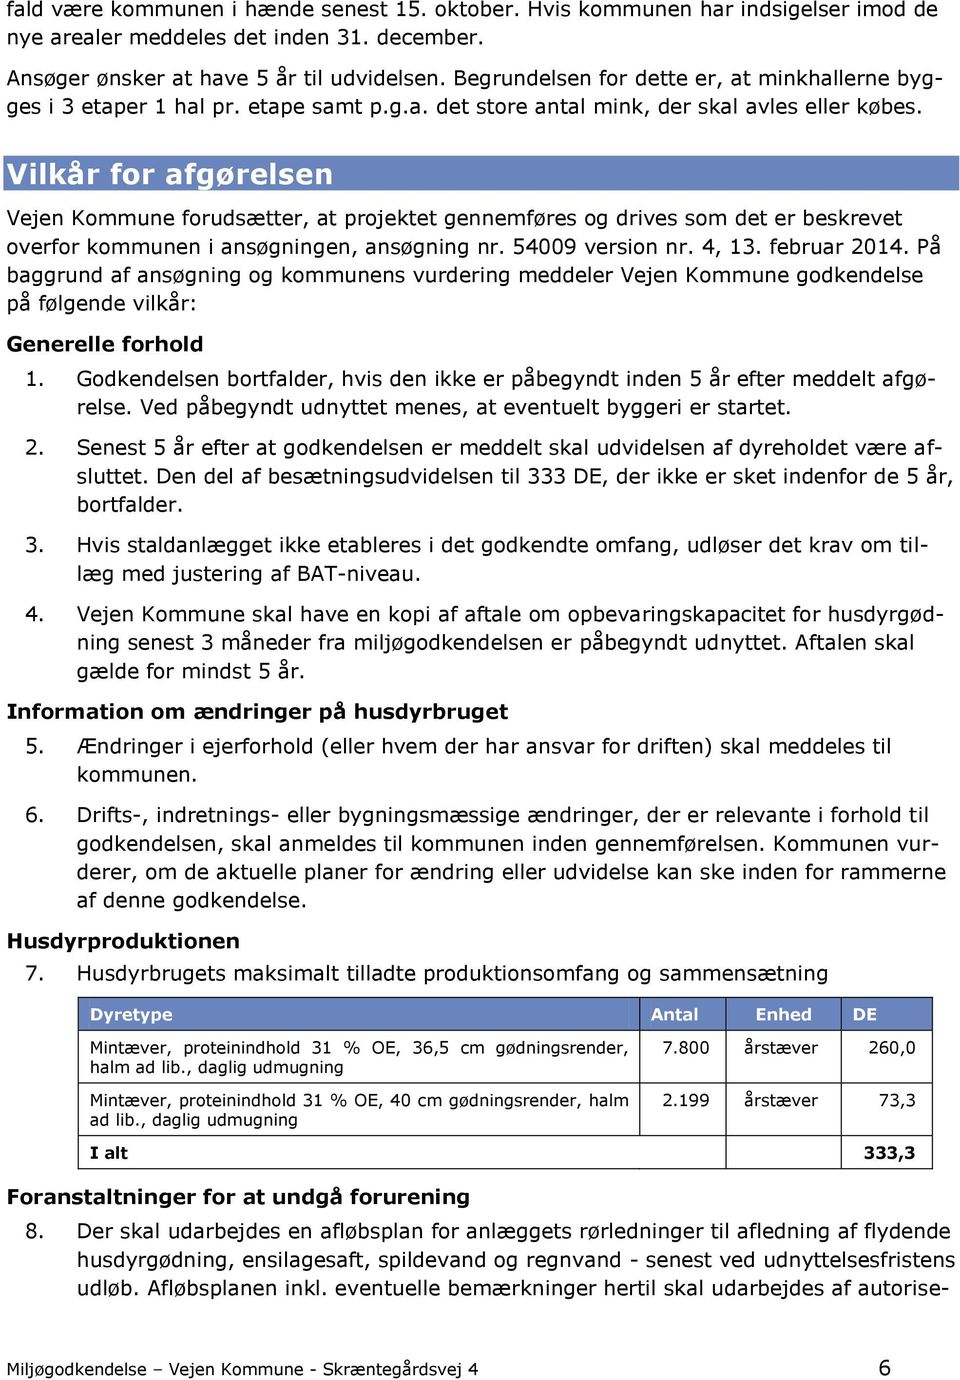 Vilkår for afgørelsen Vejen Kommune forudsætter, at projektet gennemføres og drives som det er beskrevet overfor kommunen i ansøgningen, ansøgning nr. 54009 version nr. 4, 13. februar 2014.